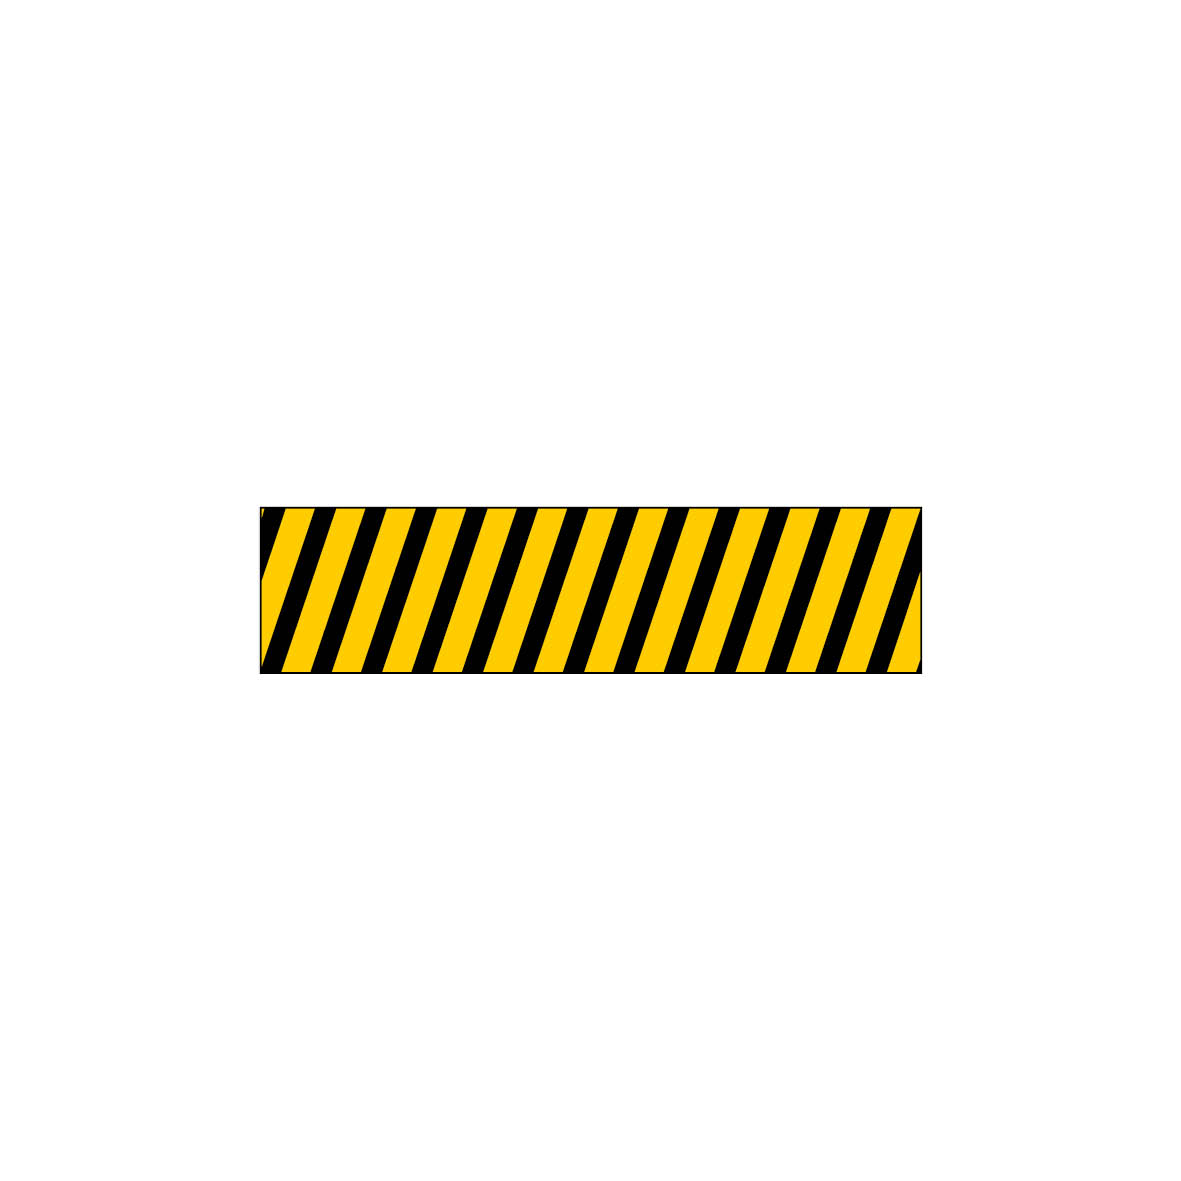 Antirutschbelag Warnmarkierung, 10.0014, gelb-schwarz, selbstklebend, Antirutsch R10,  800/200 mm, blanko